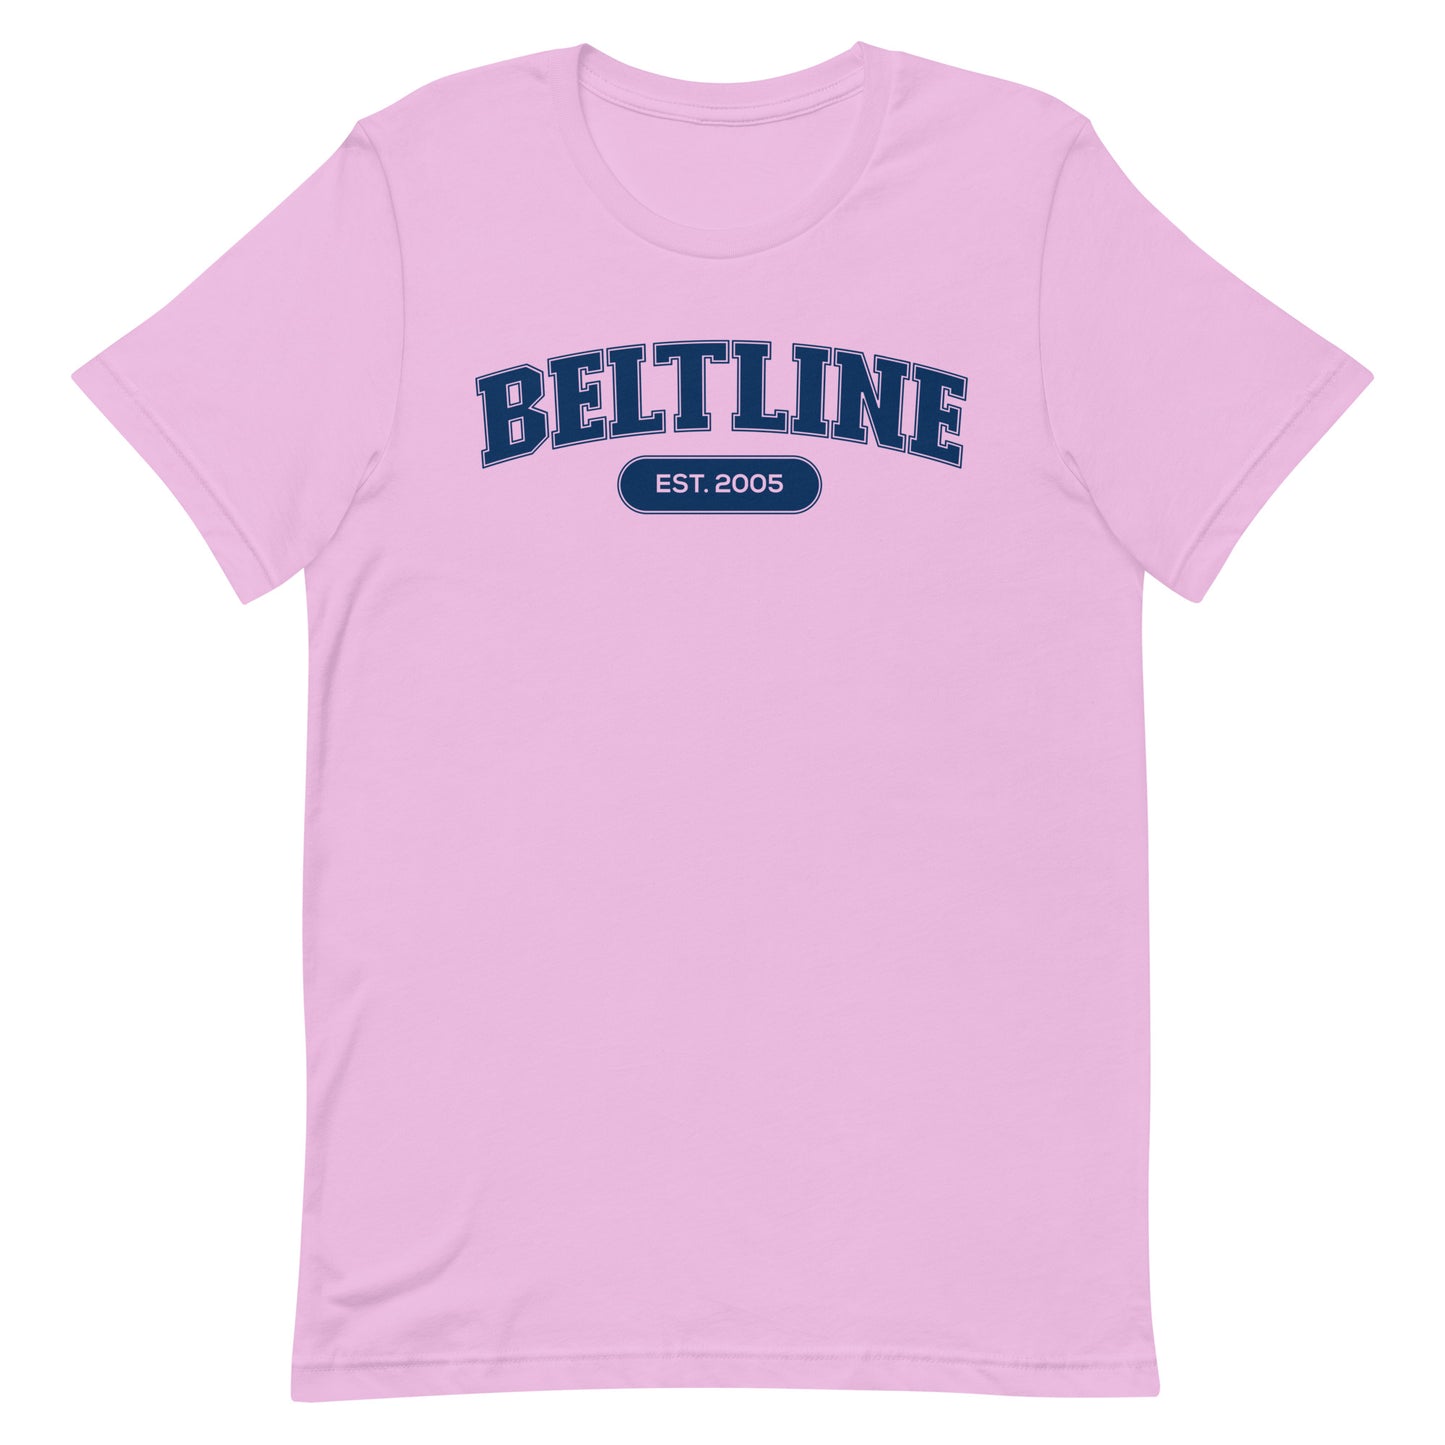 BeltLine Established Unisex Tee